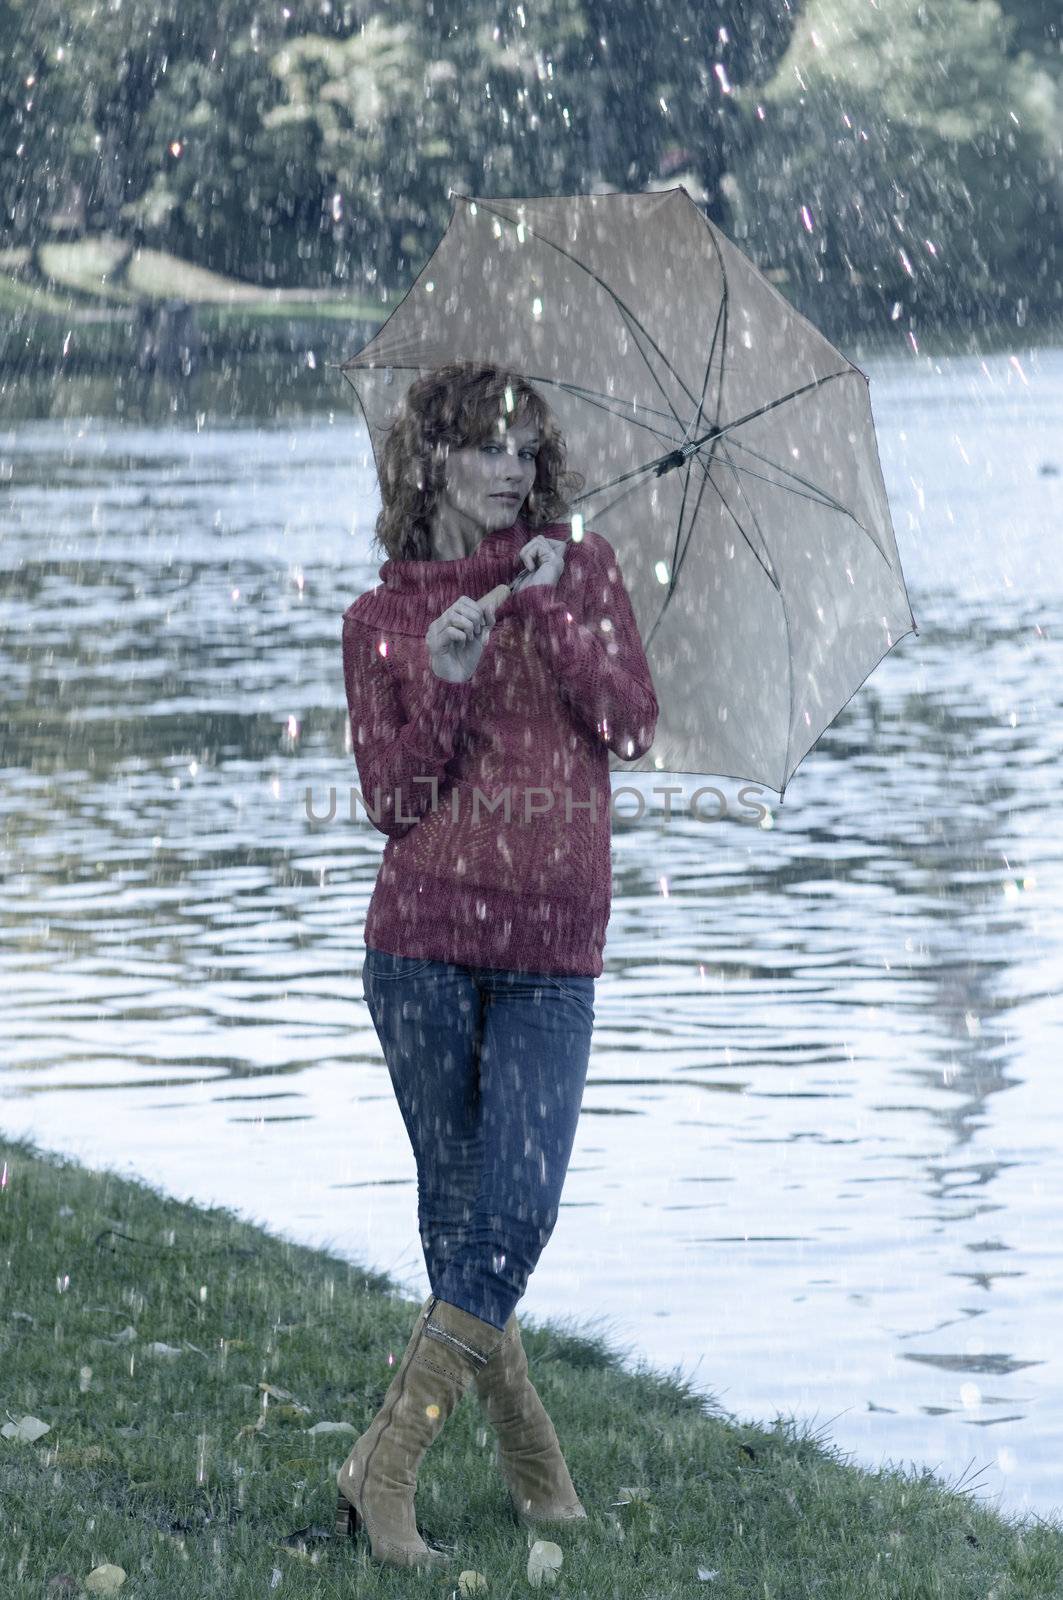 rain by fotoCD